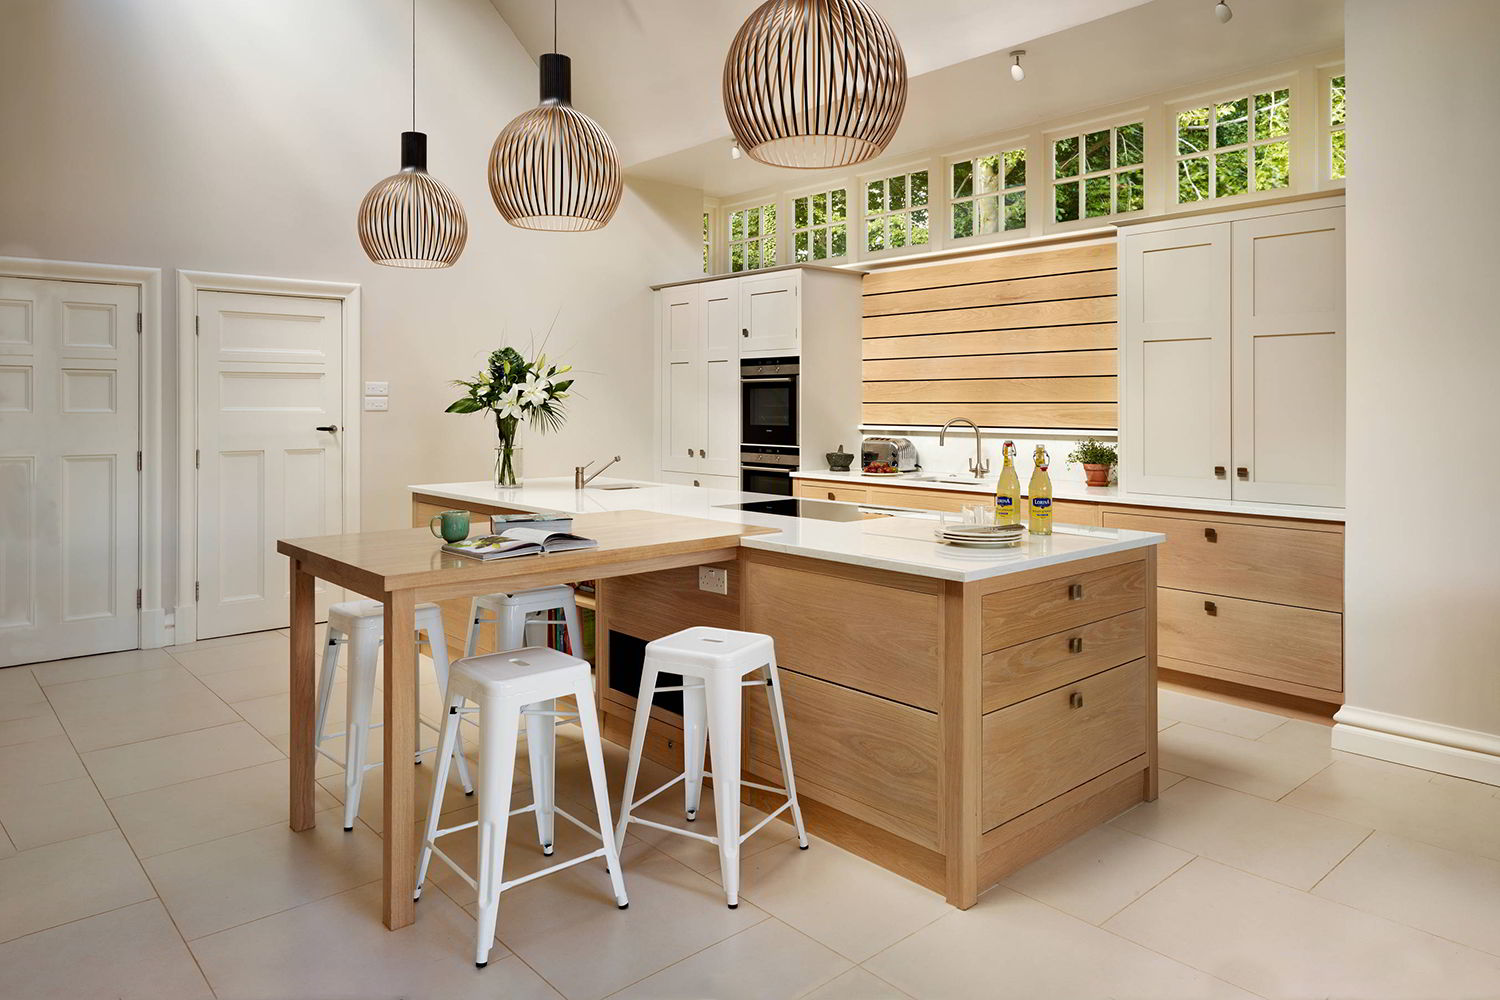 Đồ nội thất trong phòng bếp giữ nguyên màu sắc của gỗ, tone màu mật ong hay gỗ tối là sự lựa chọn của rất nhiều gia chủ yêu nét đẹp thân thiện với thiên nhiên.